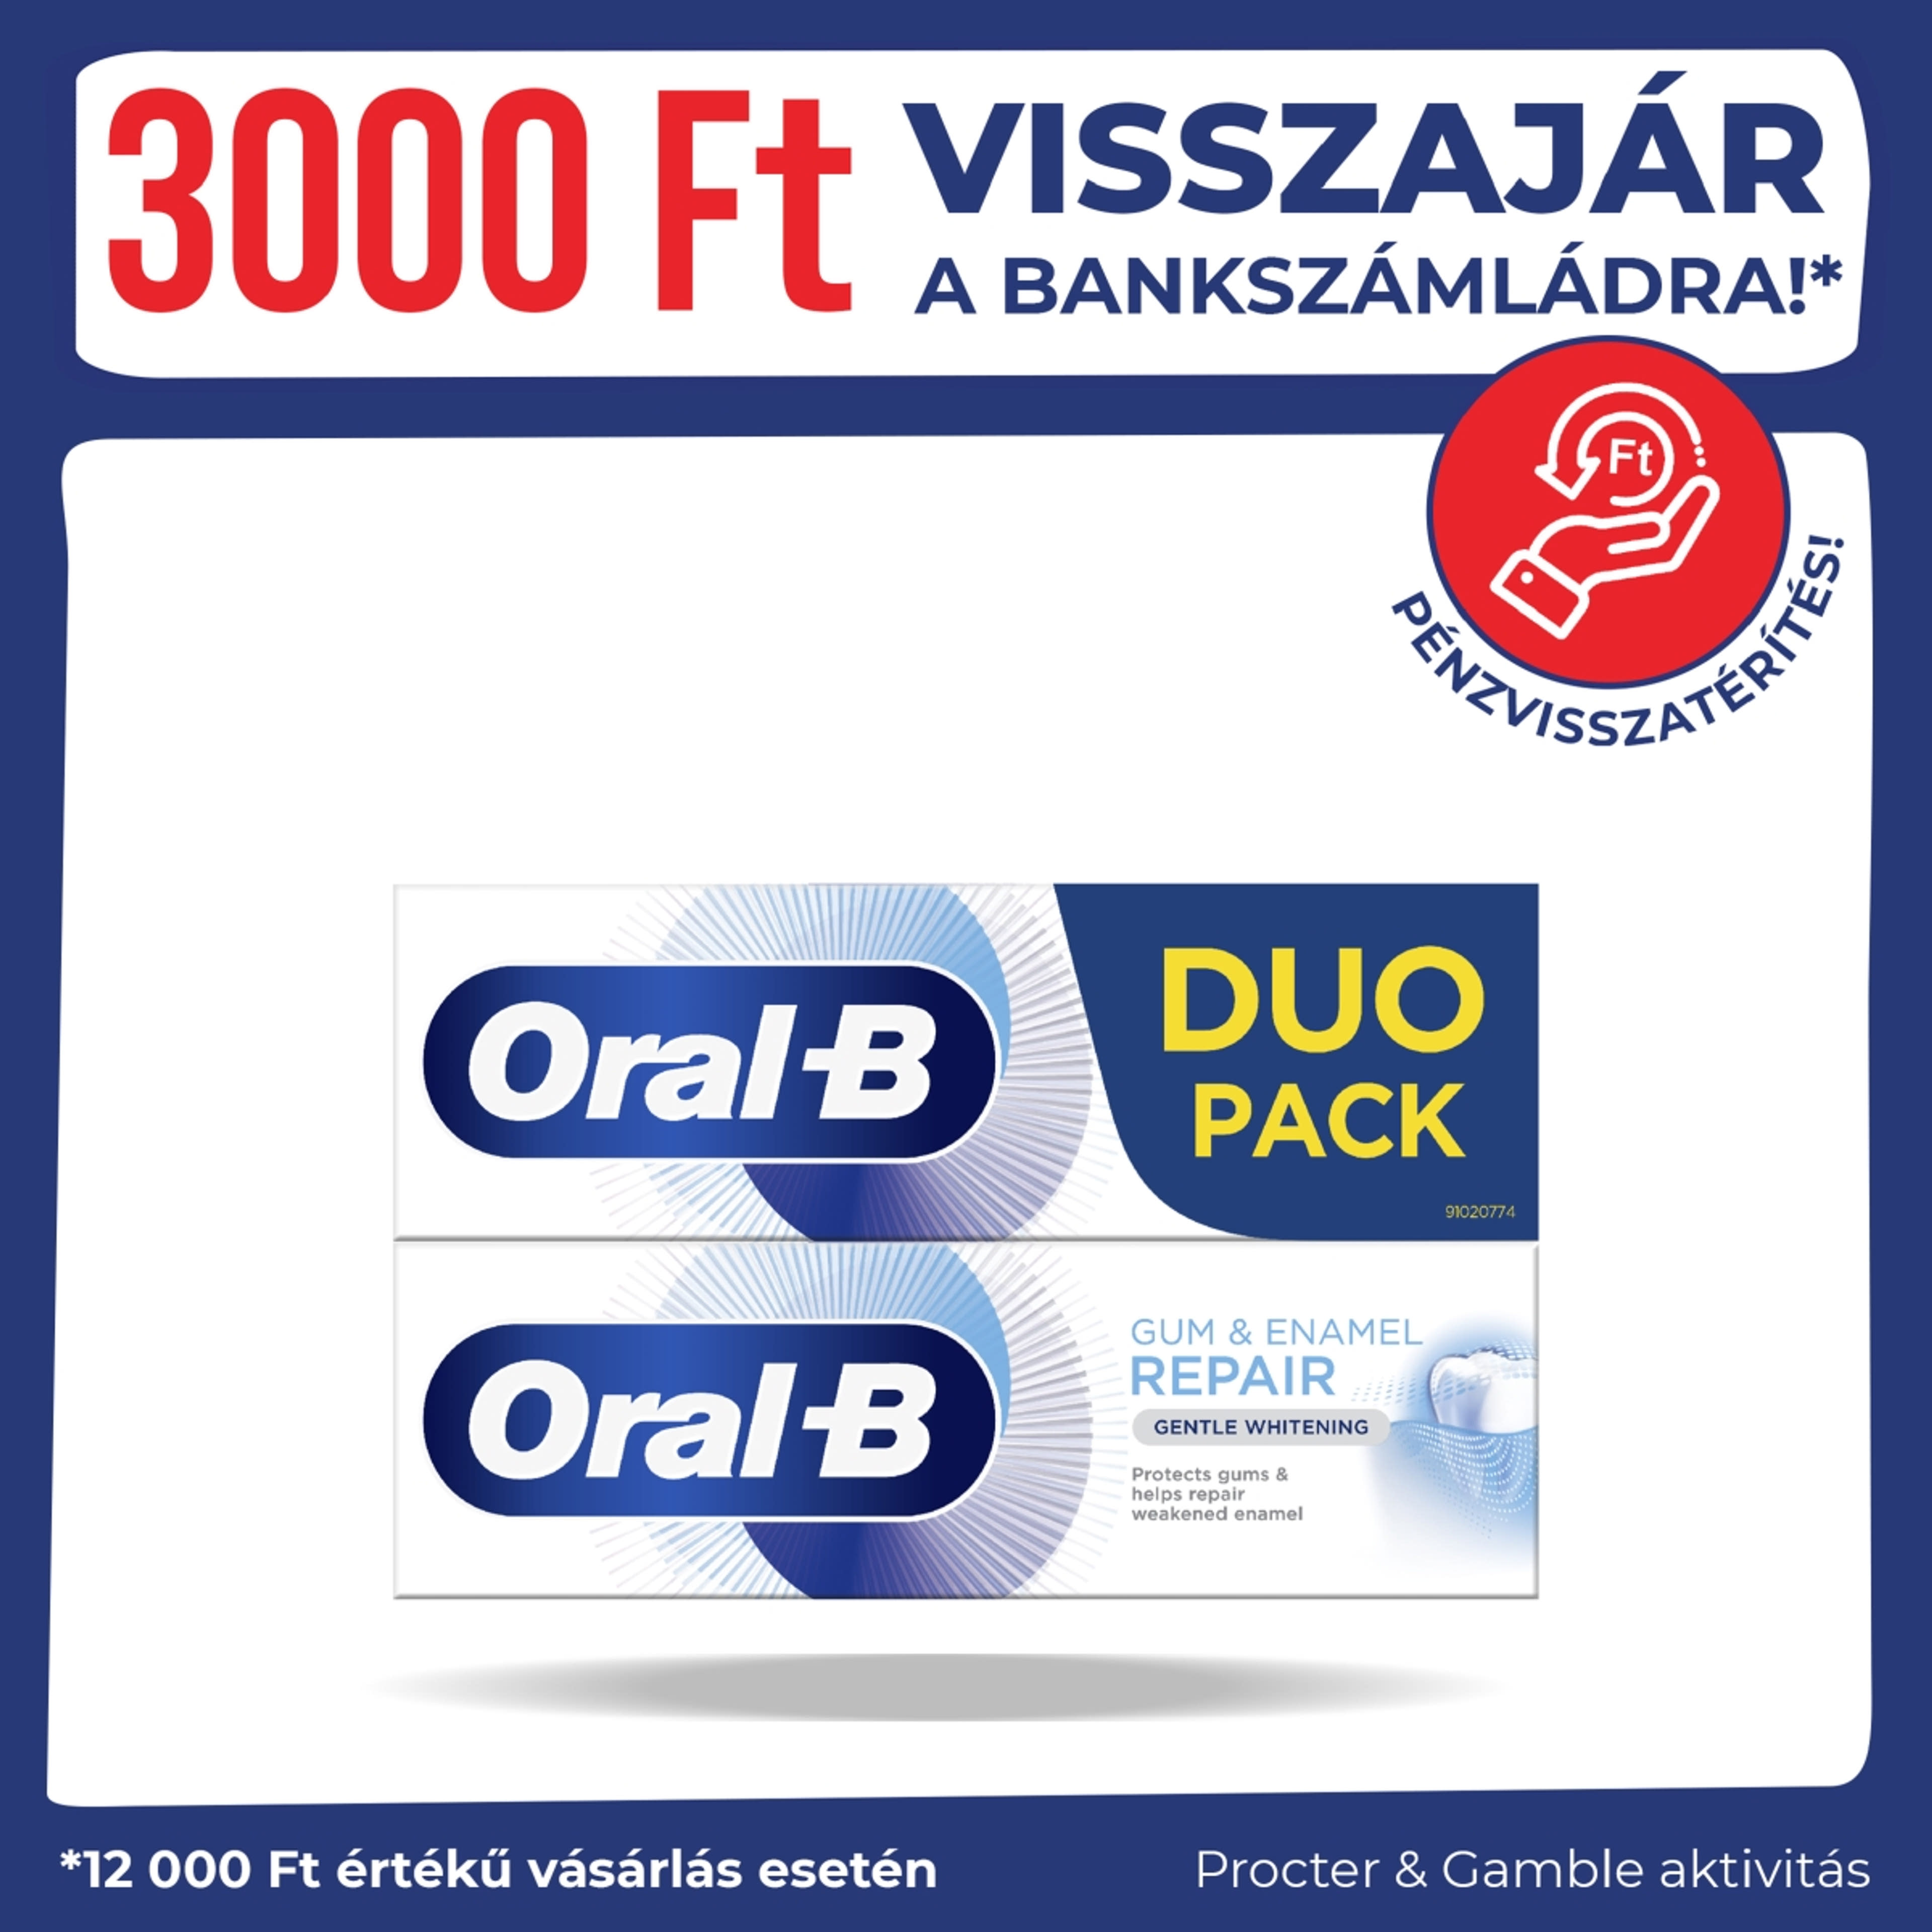 Oral-B Gum & Enamel Repair Gentle Whitening fogkrém DUO 2*75 ml - 150 ml